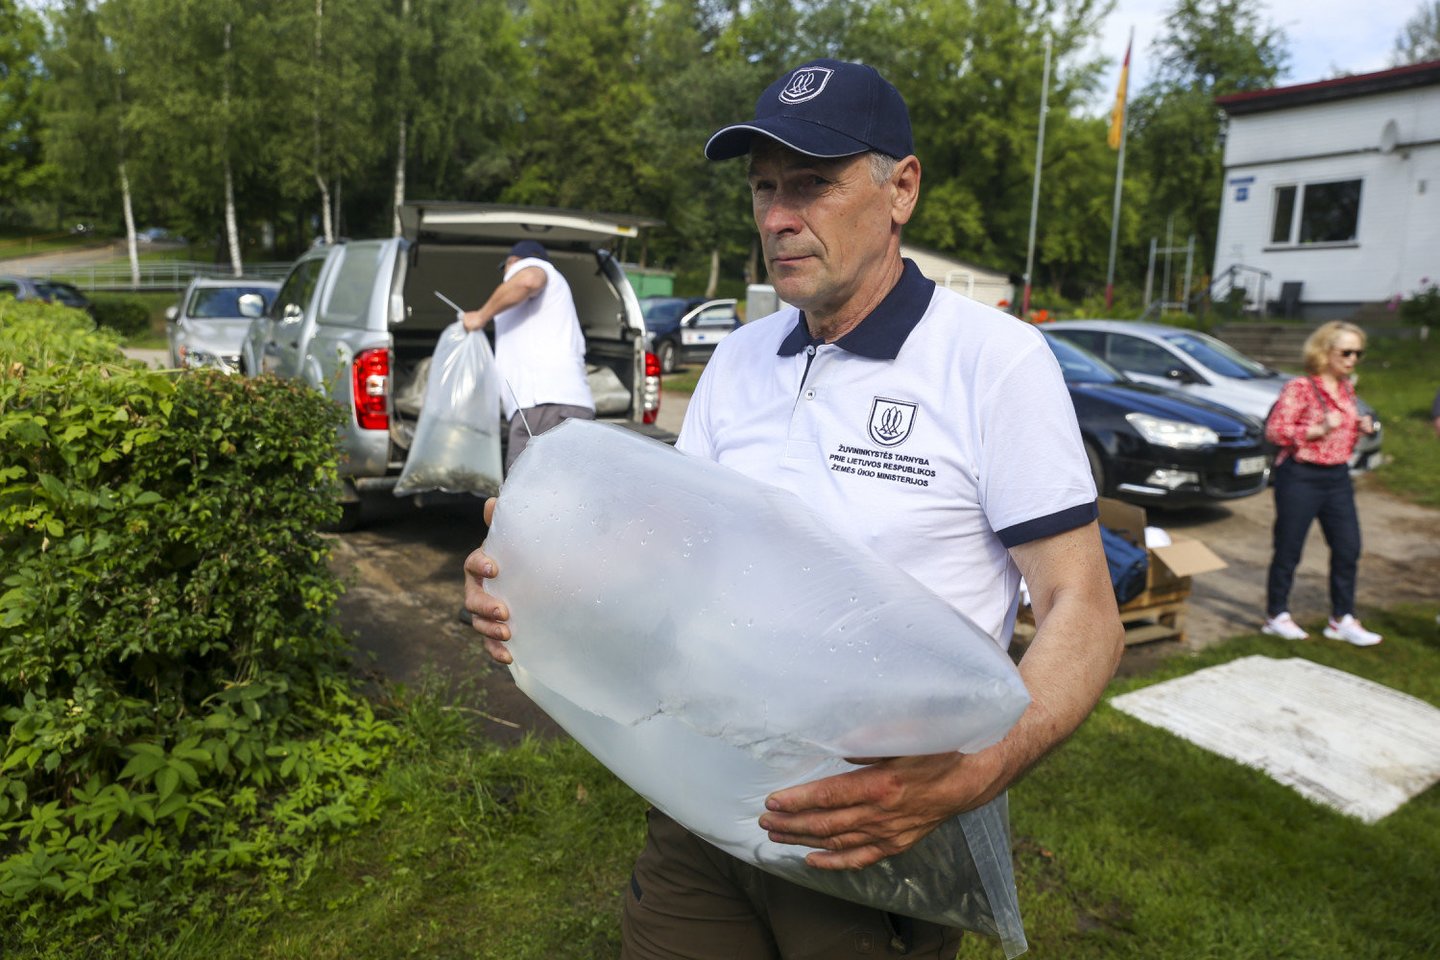  Vilniaus Žirmūnų paplūdimyje į Neries upę paleista 2 tūkstančiai ypač retų žuvų<br> Į Nerį paleista tūkstančiai retų žuvų - ūsorių